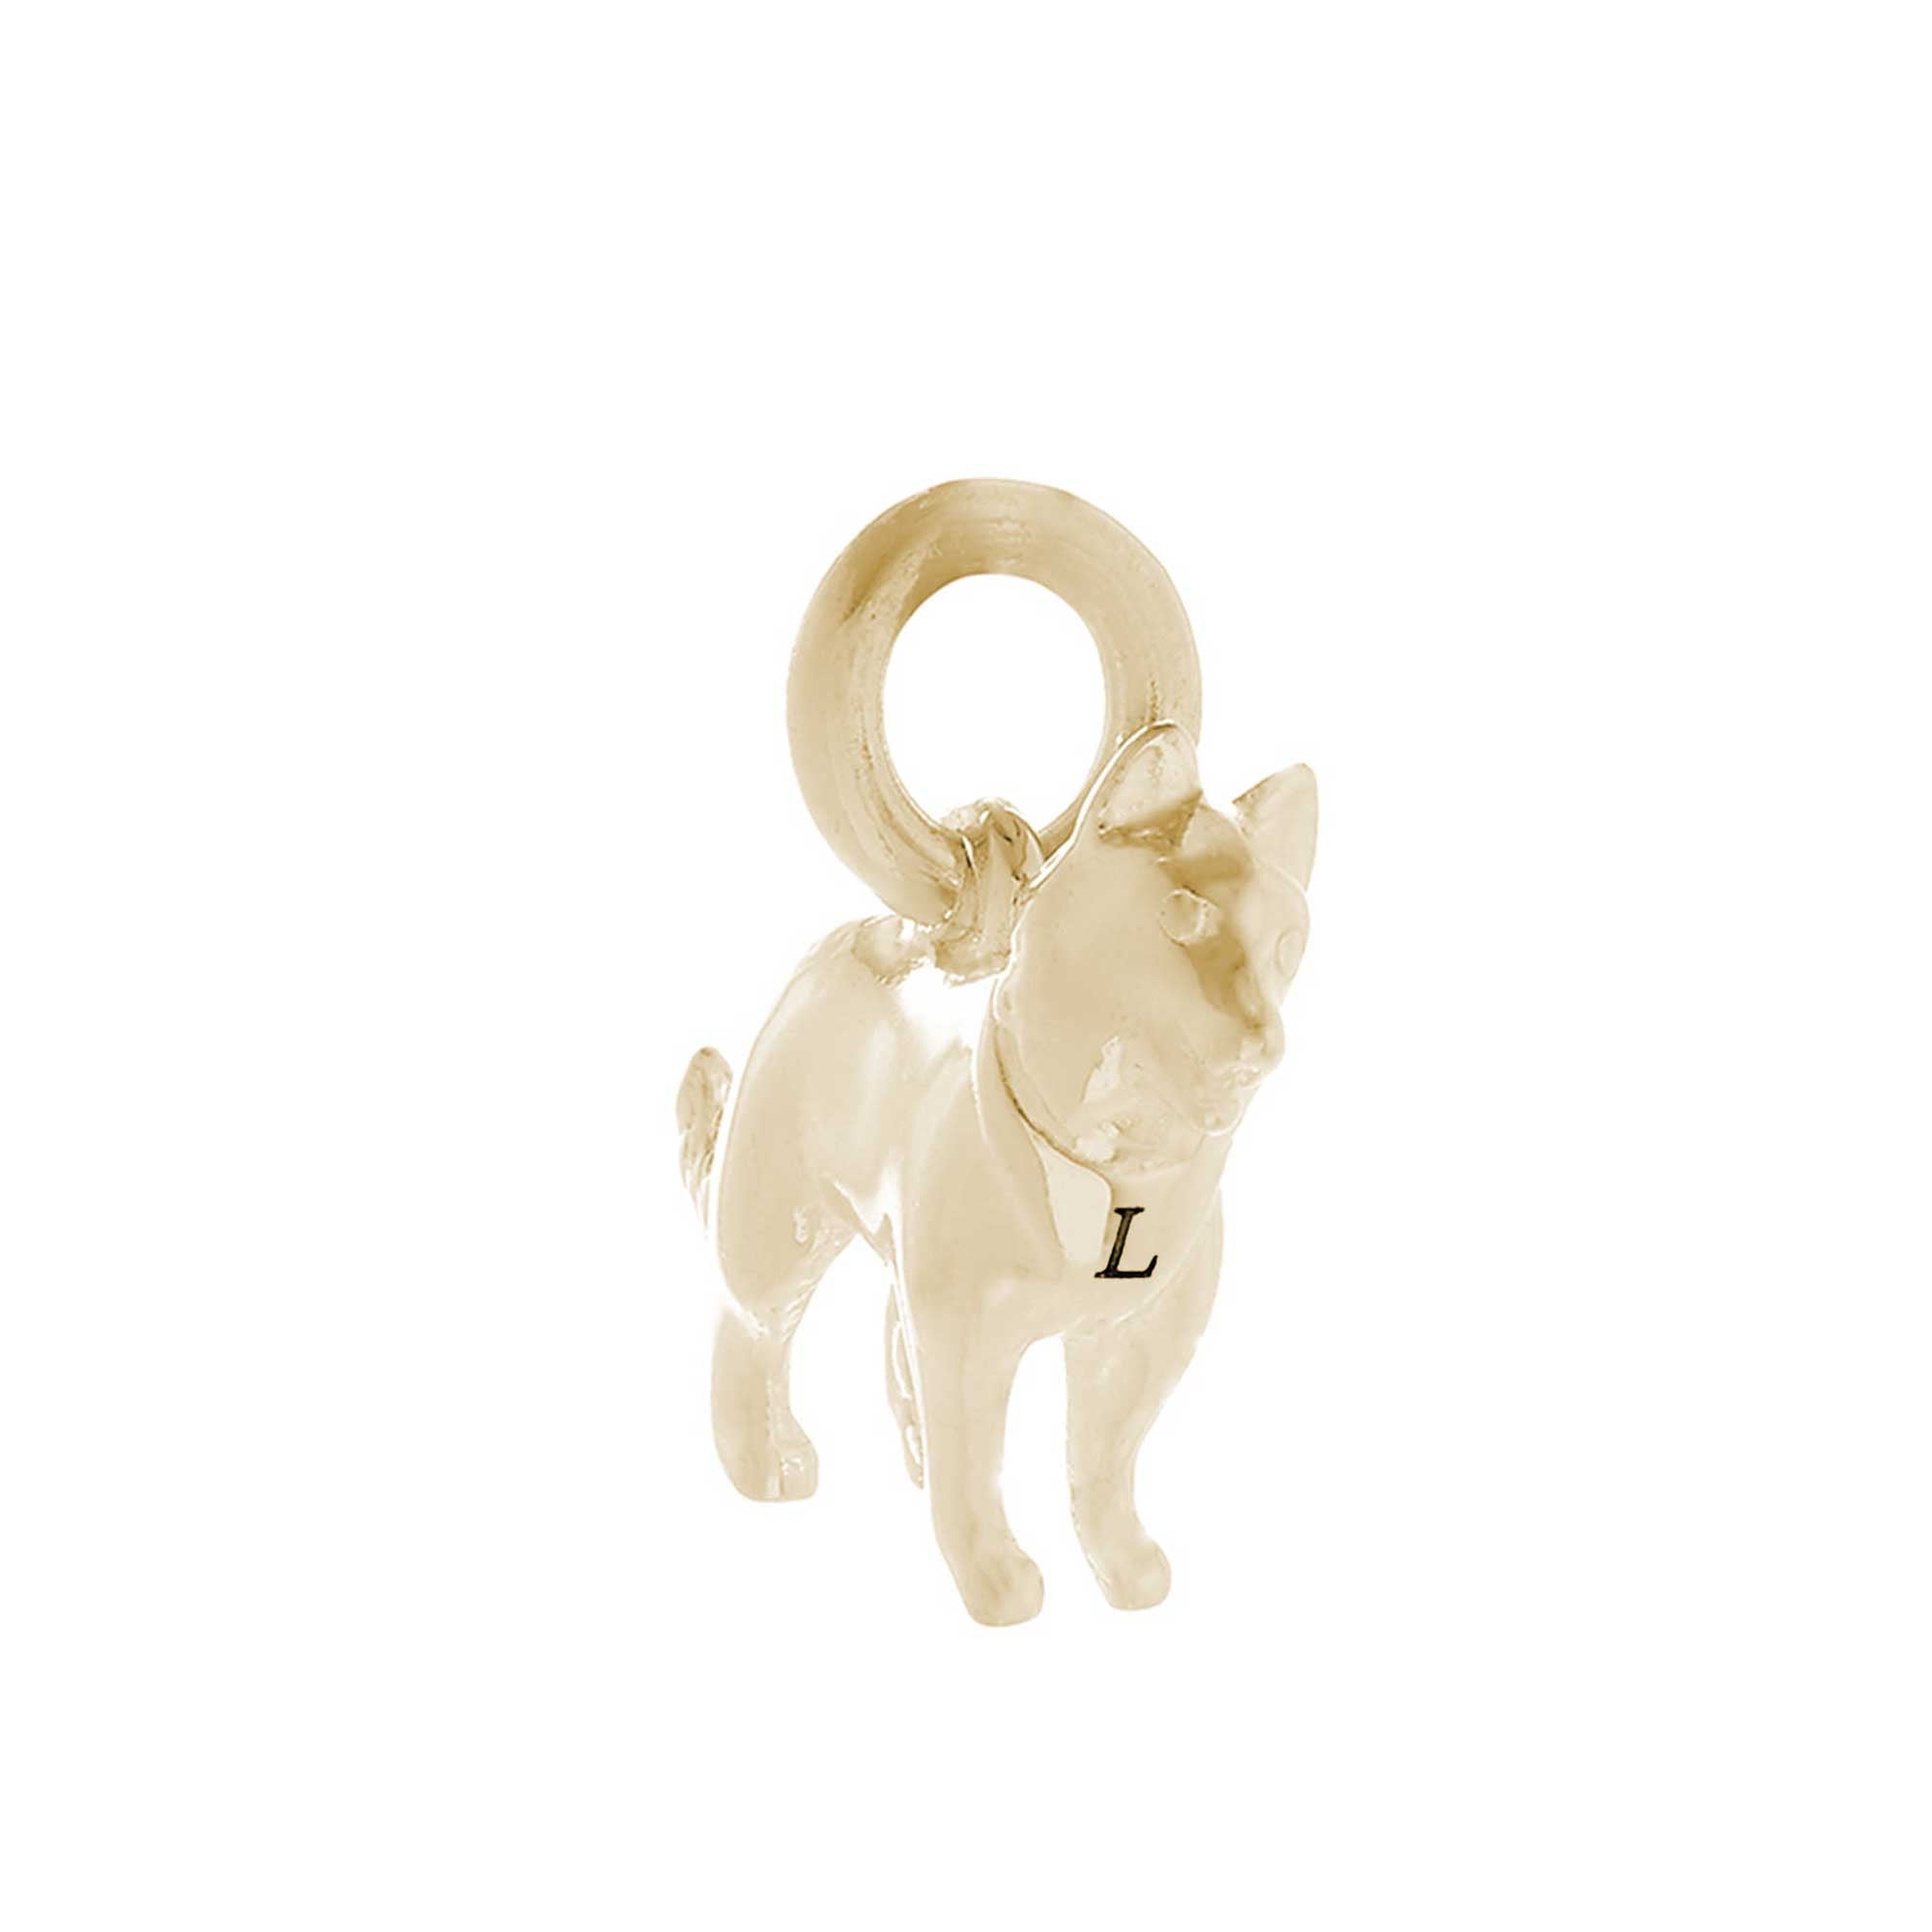 solid gold border collie dog charm 9k 9ct for bracelet